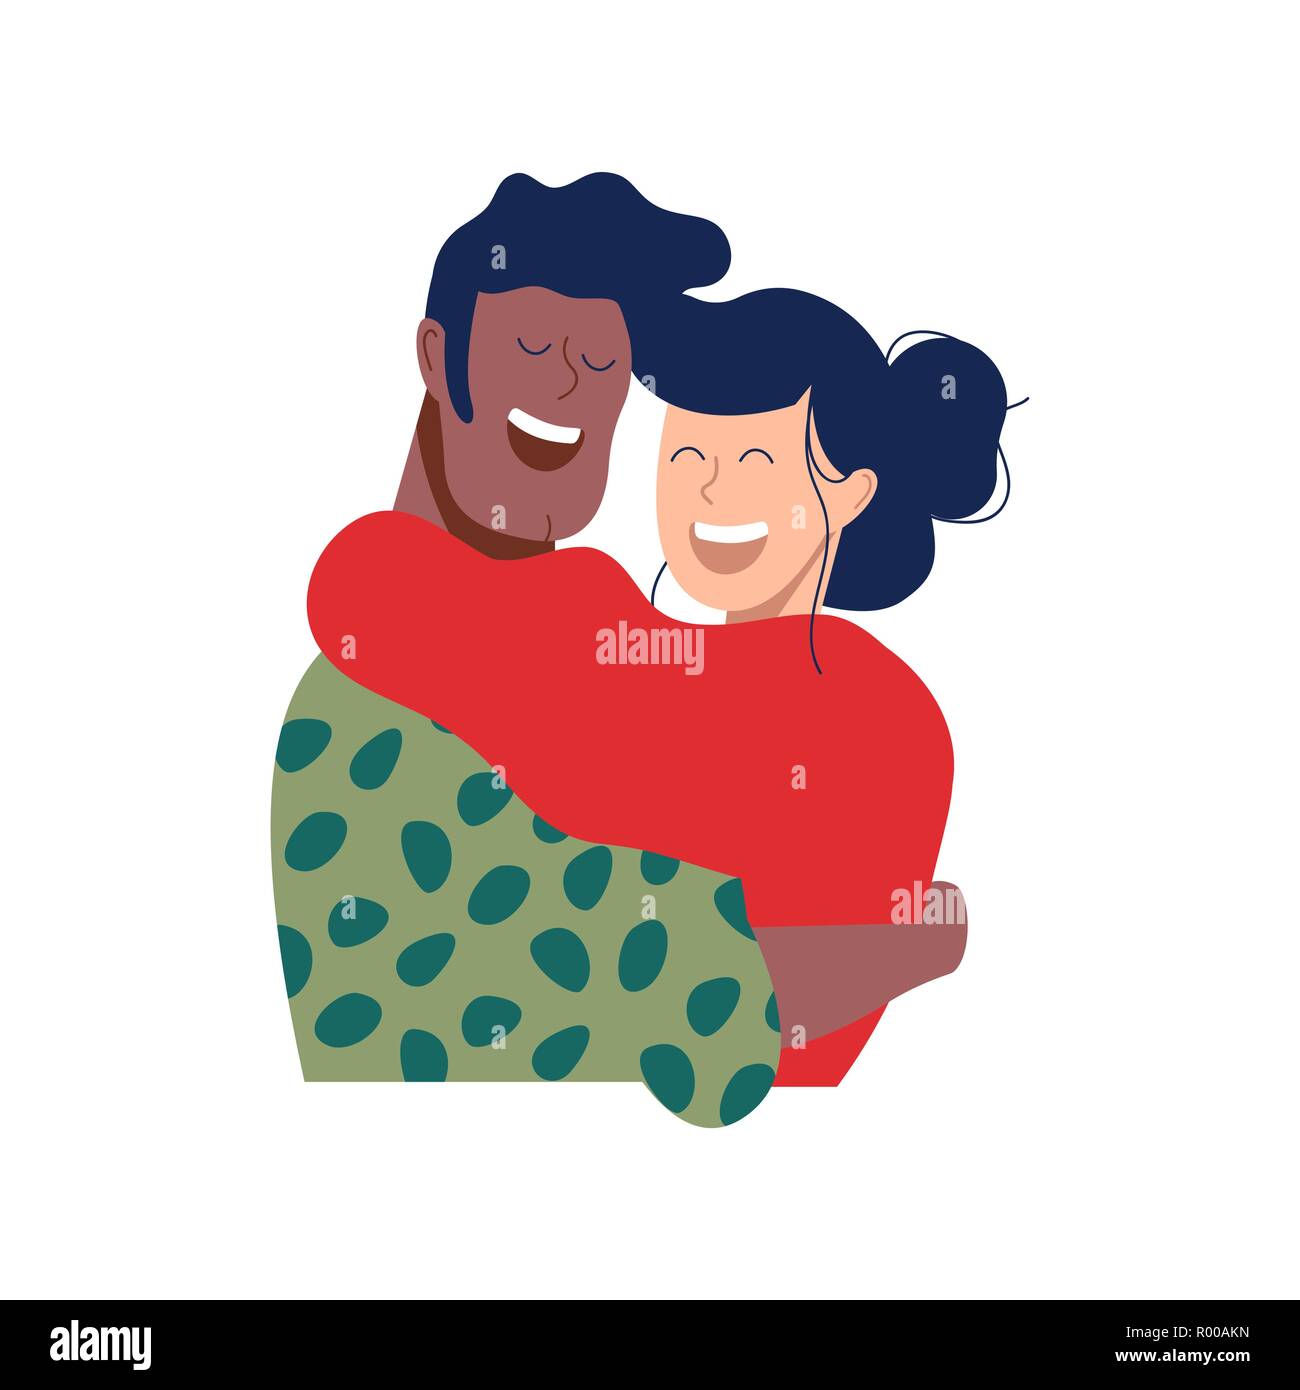 Deux amis ou romantique couple hugging and smiling together in noël des vêtements d'hiver. Les gens heureux divers illustration relation isolées sur des ba Illustration de Vecteur